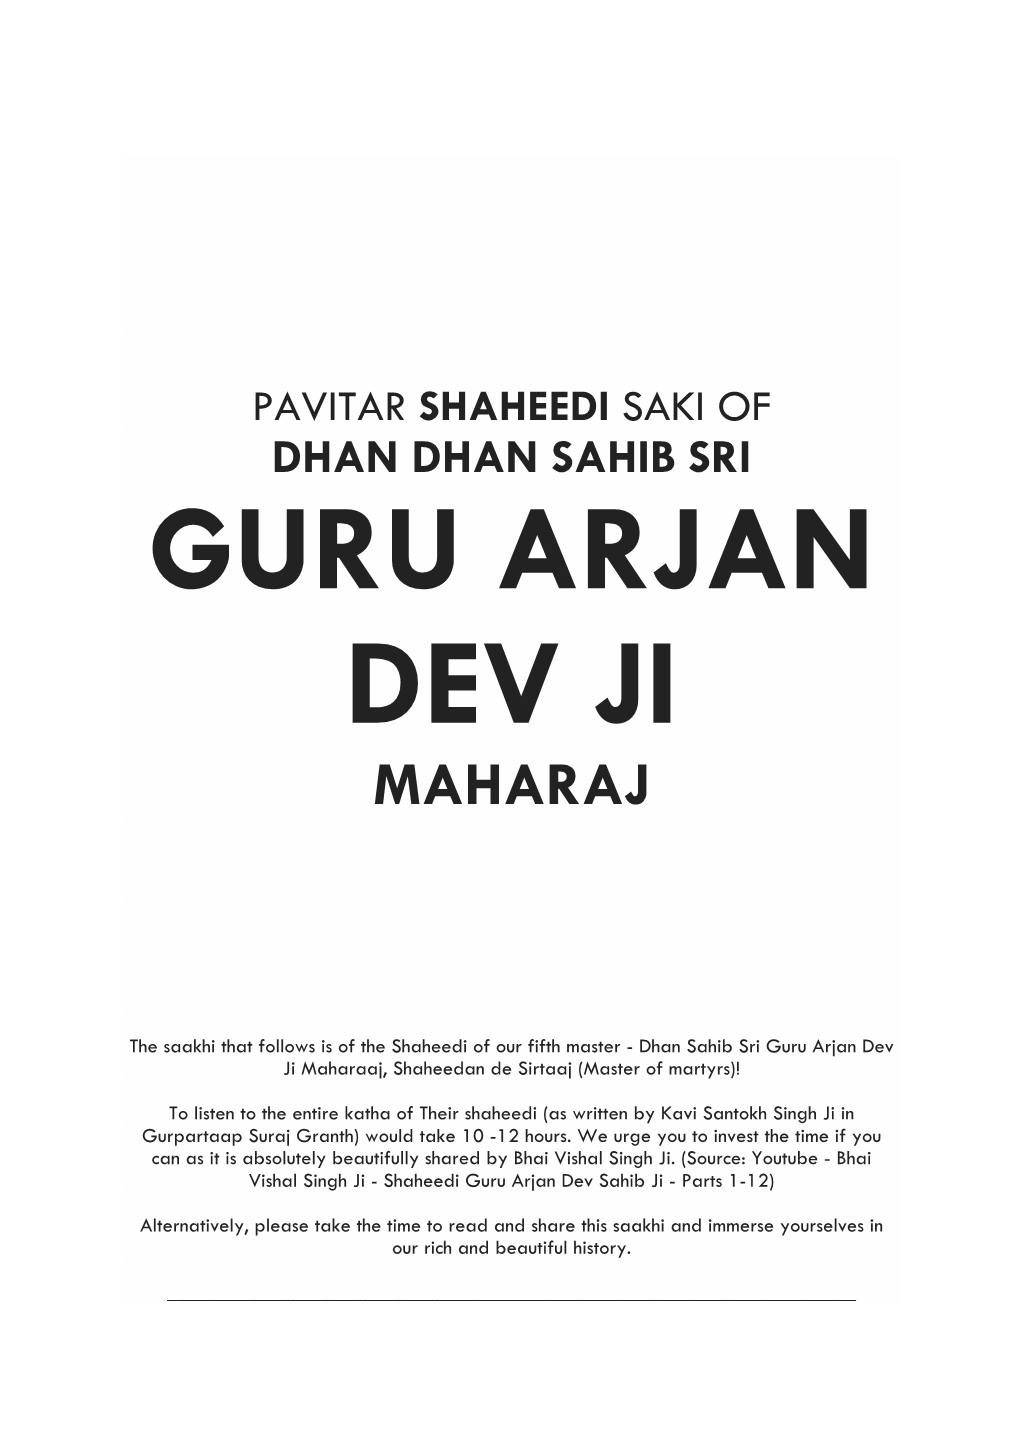 Dhan Dhan Sahib Sri Guru Arjan Dev Ji Maharaj